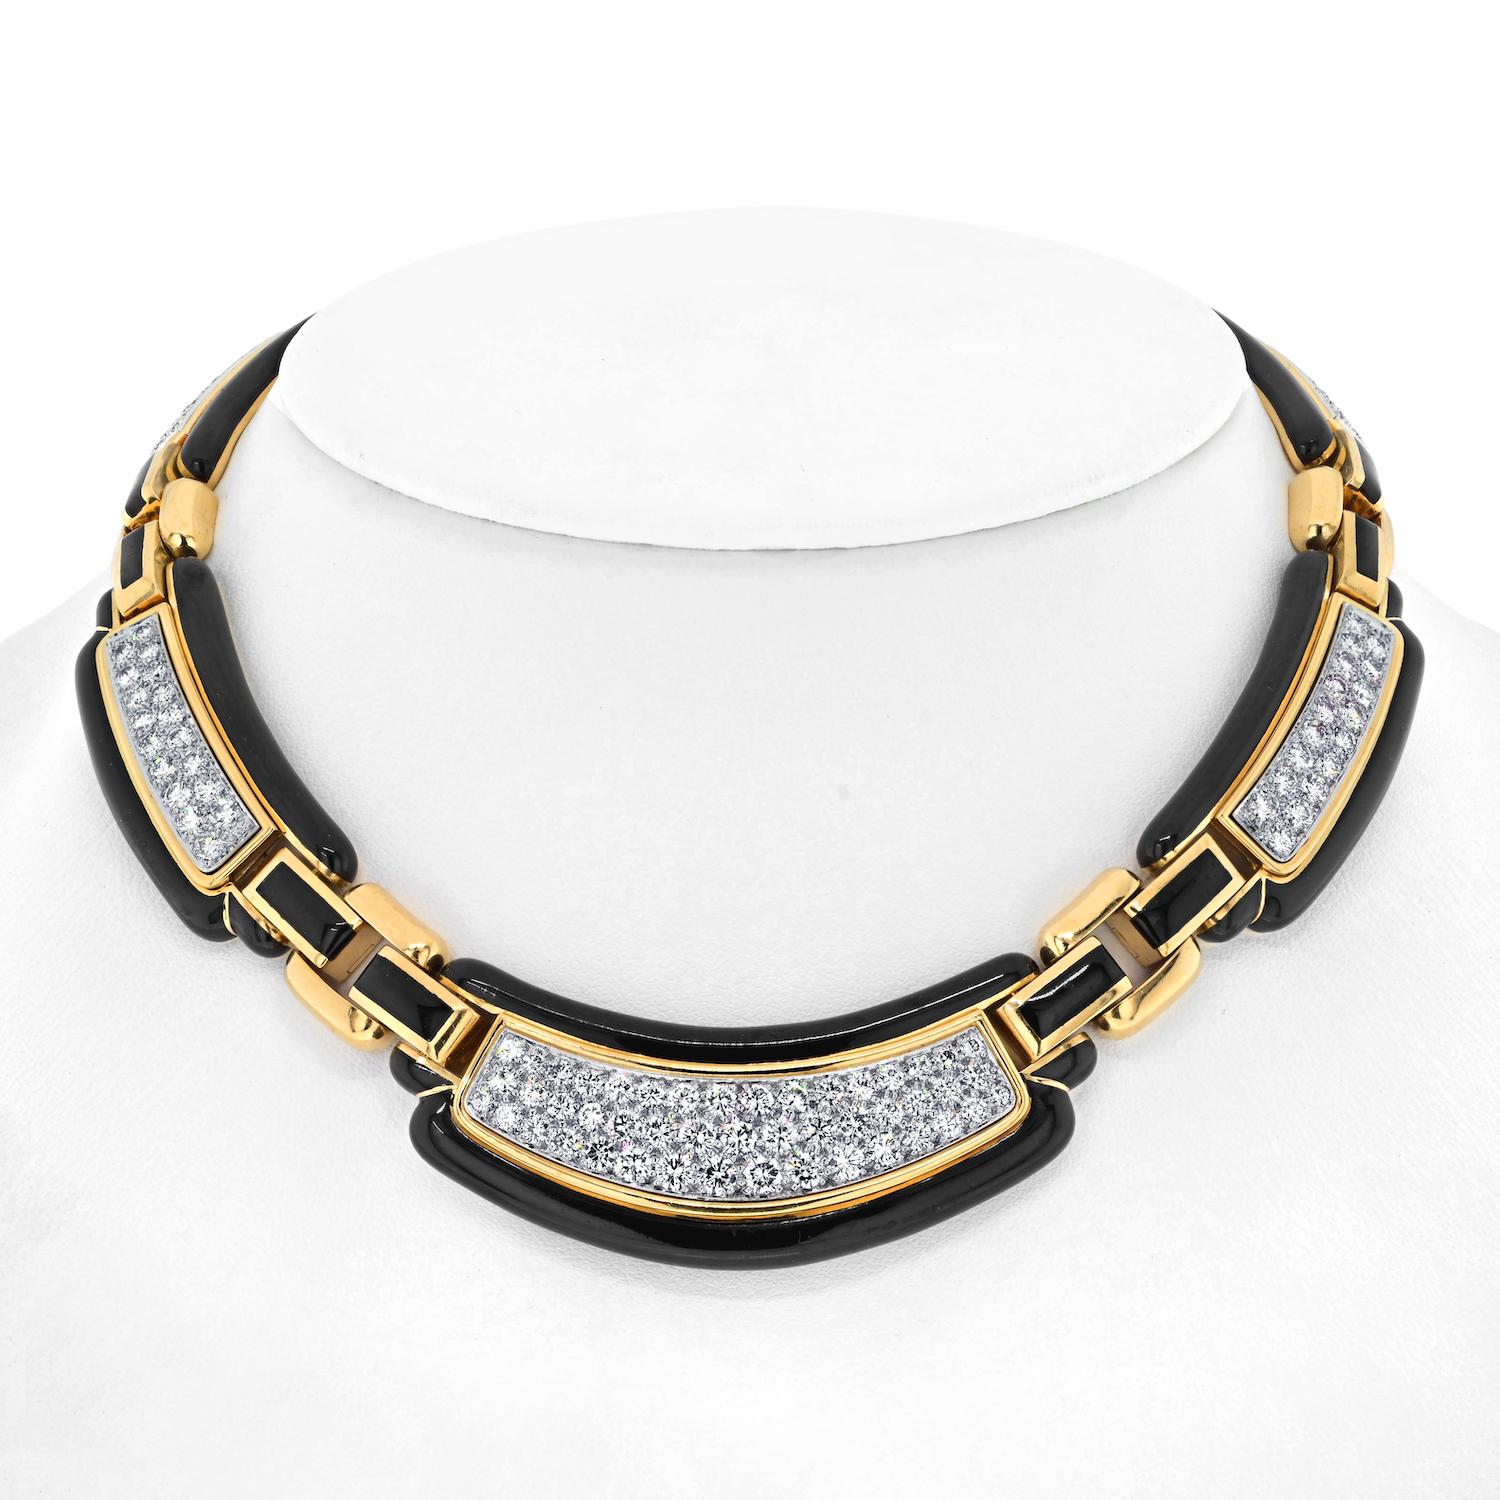 Préparez-vous à être enchantés par la beauté envoûtante de ce collier David Webb en platine et or jaune 18 carats avec diamants en émail noir. Cette pièce extraordinaire illustre le savoir-faire et l'art inégalés qui font la renommée de David